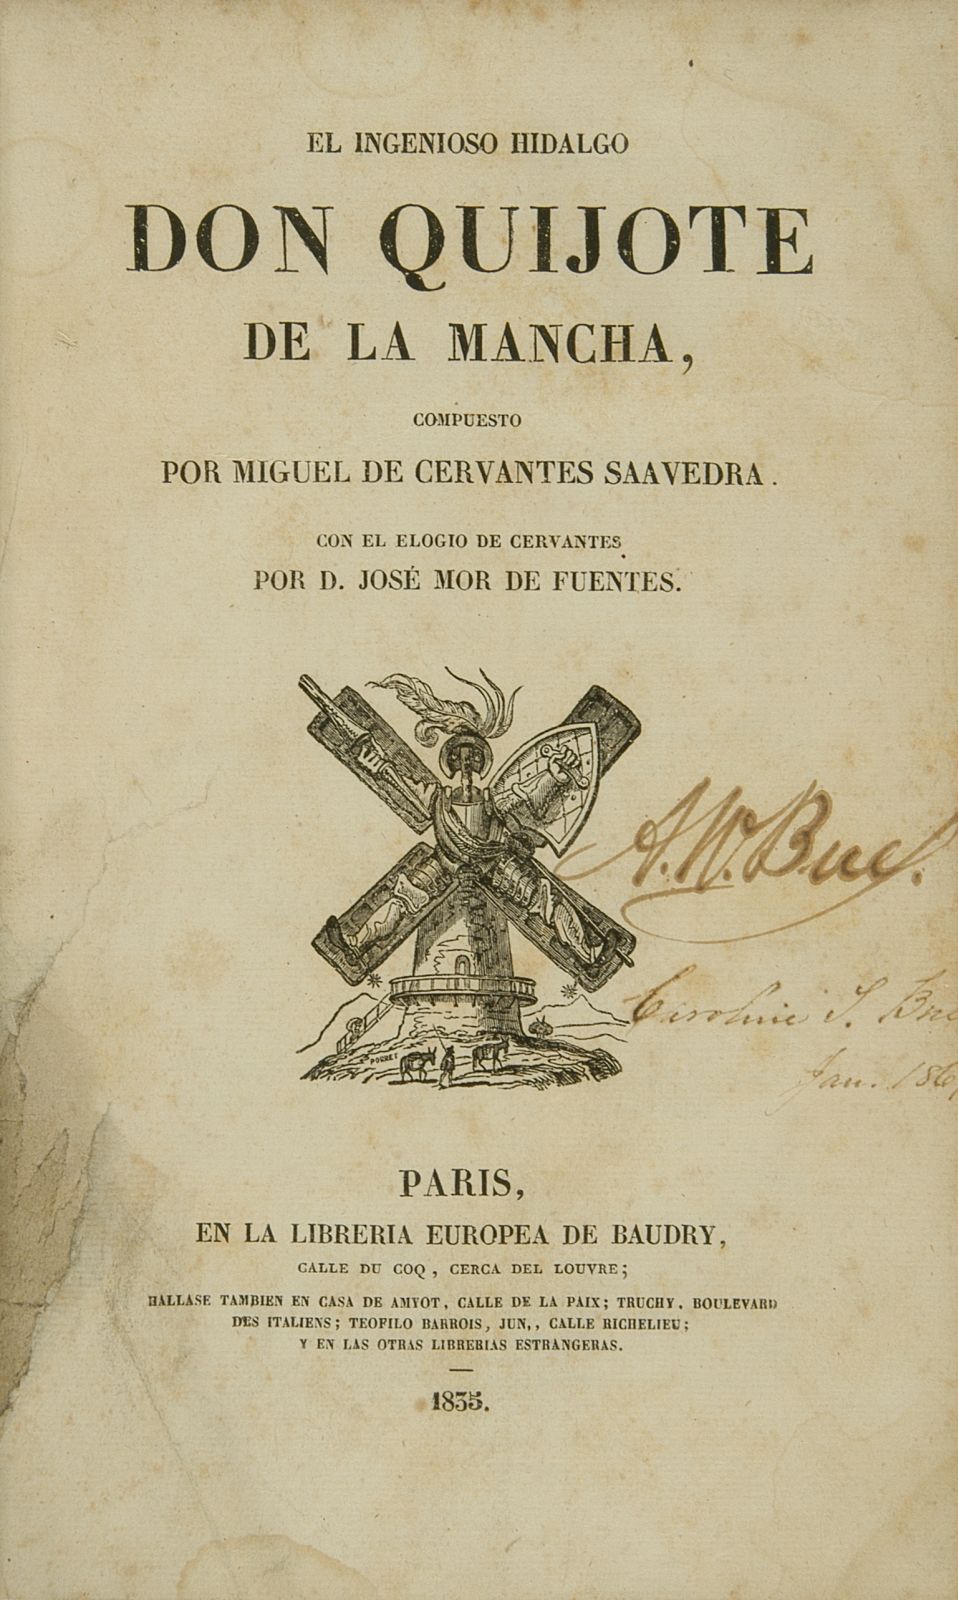 Libros en español: el ingenioso hidalgo Don Quijote de la Mancha | My Spanish in Spain